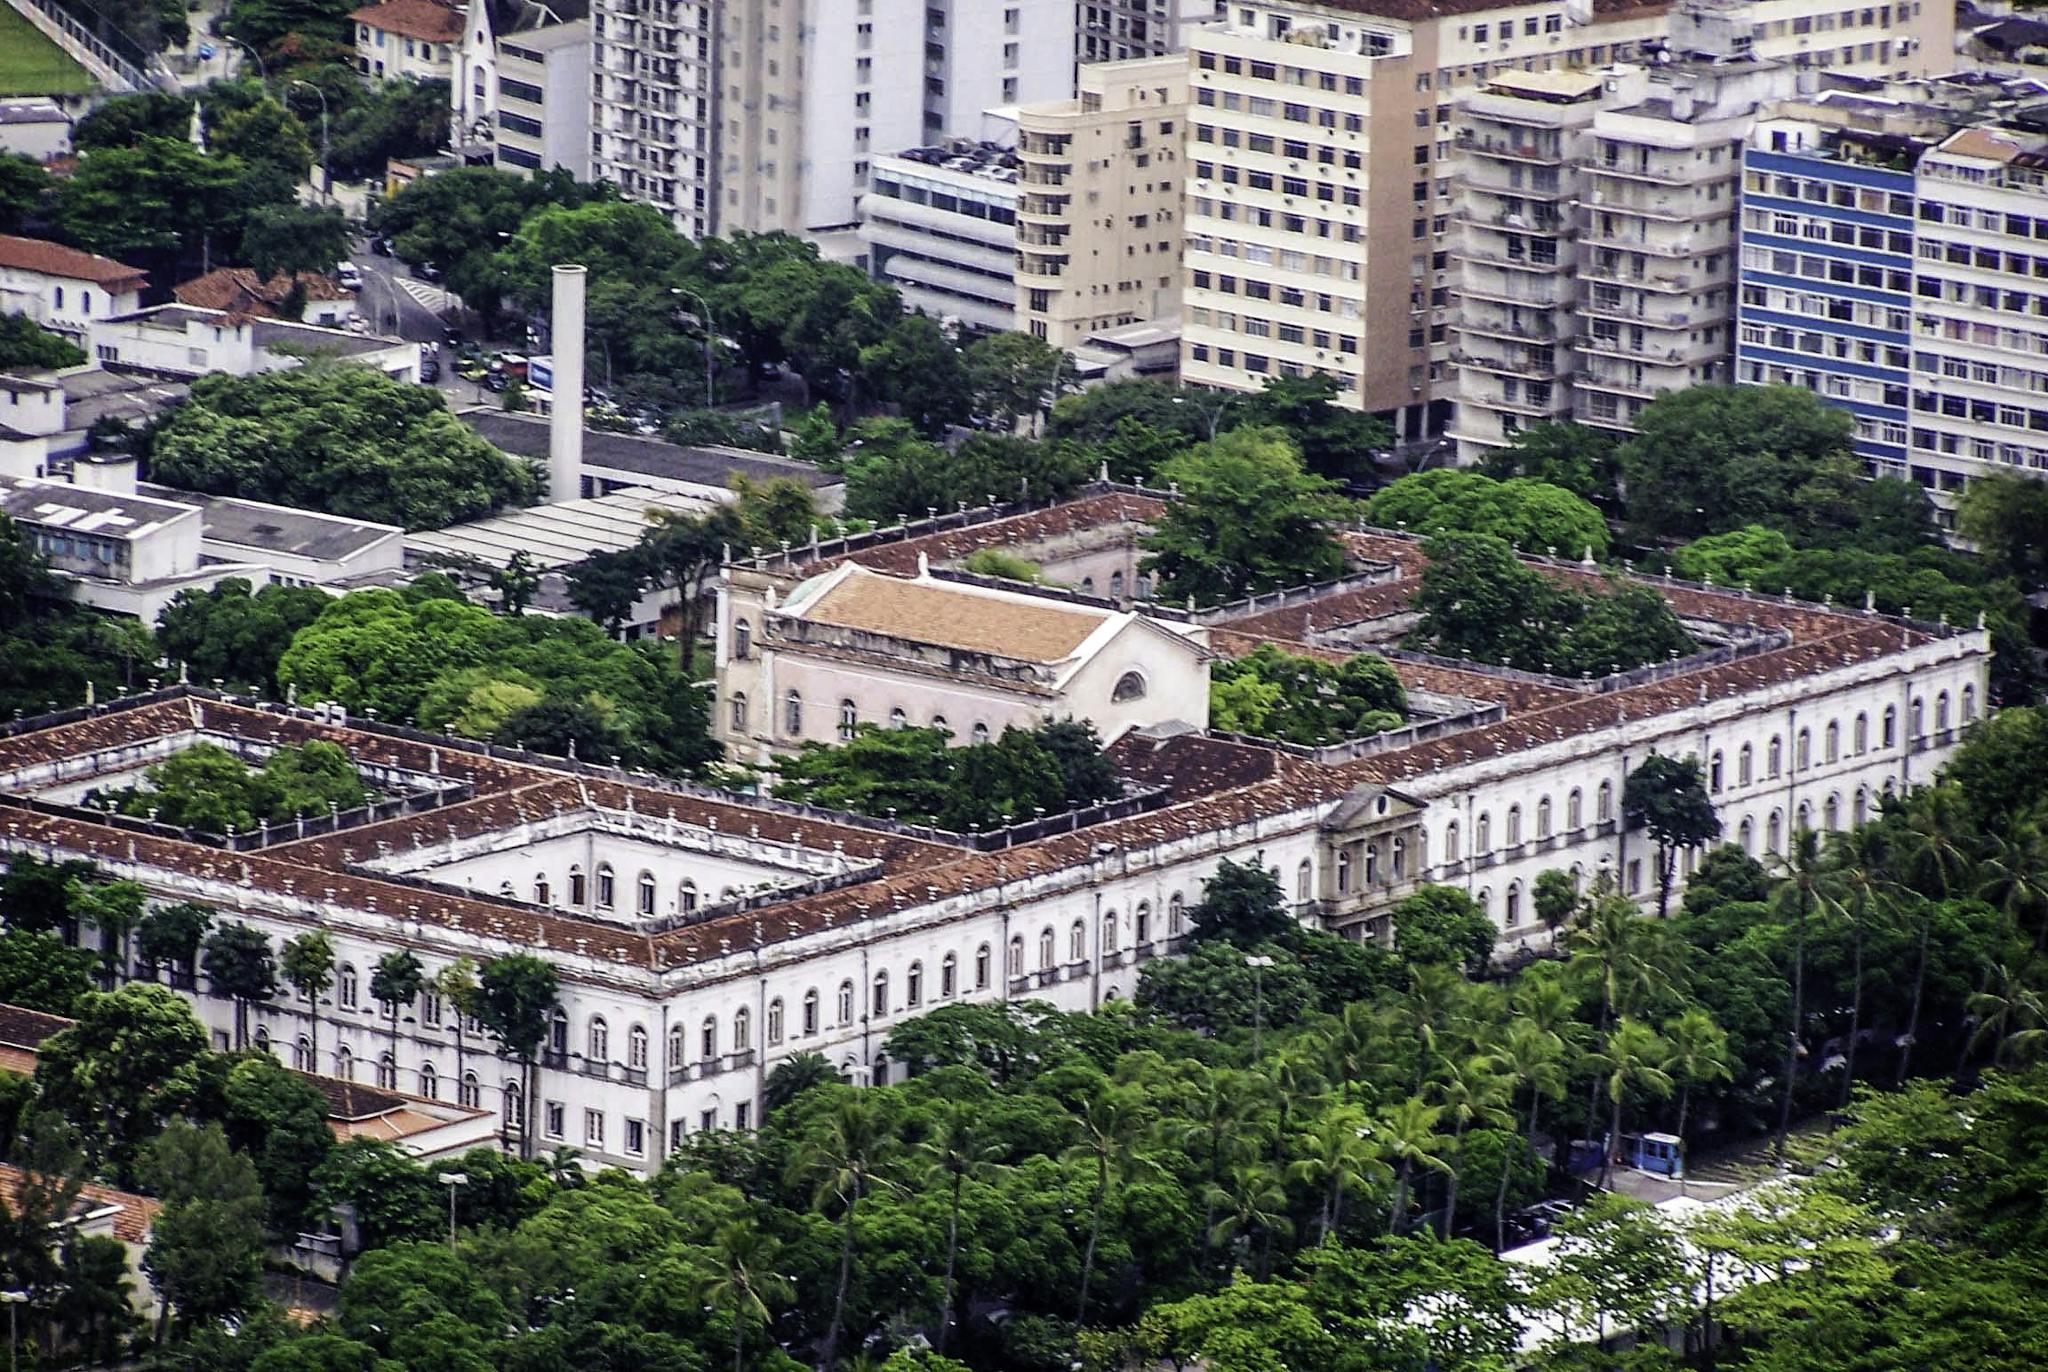 Federal University of Rio de Janeiro